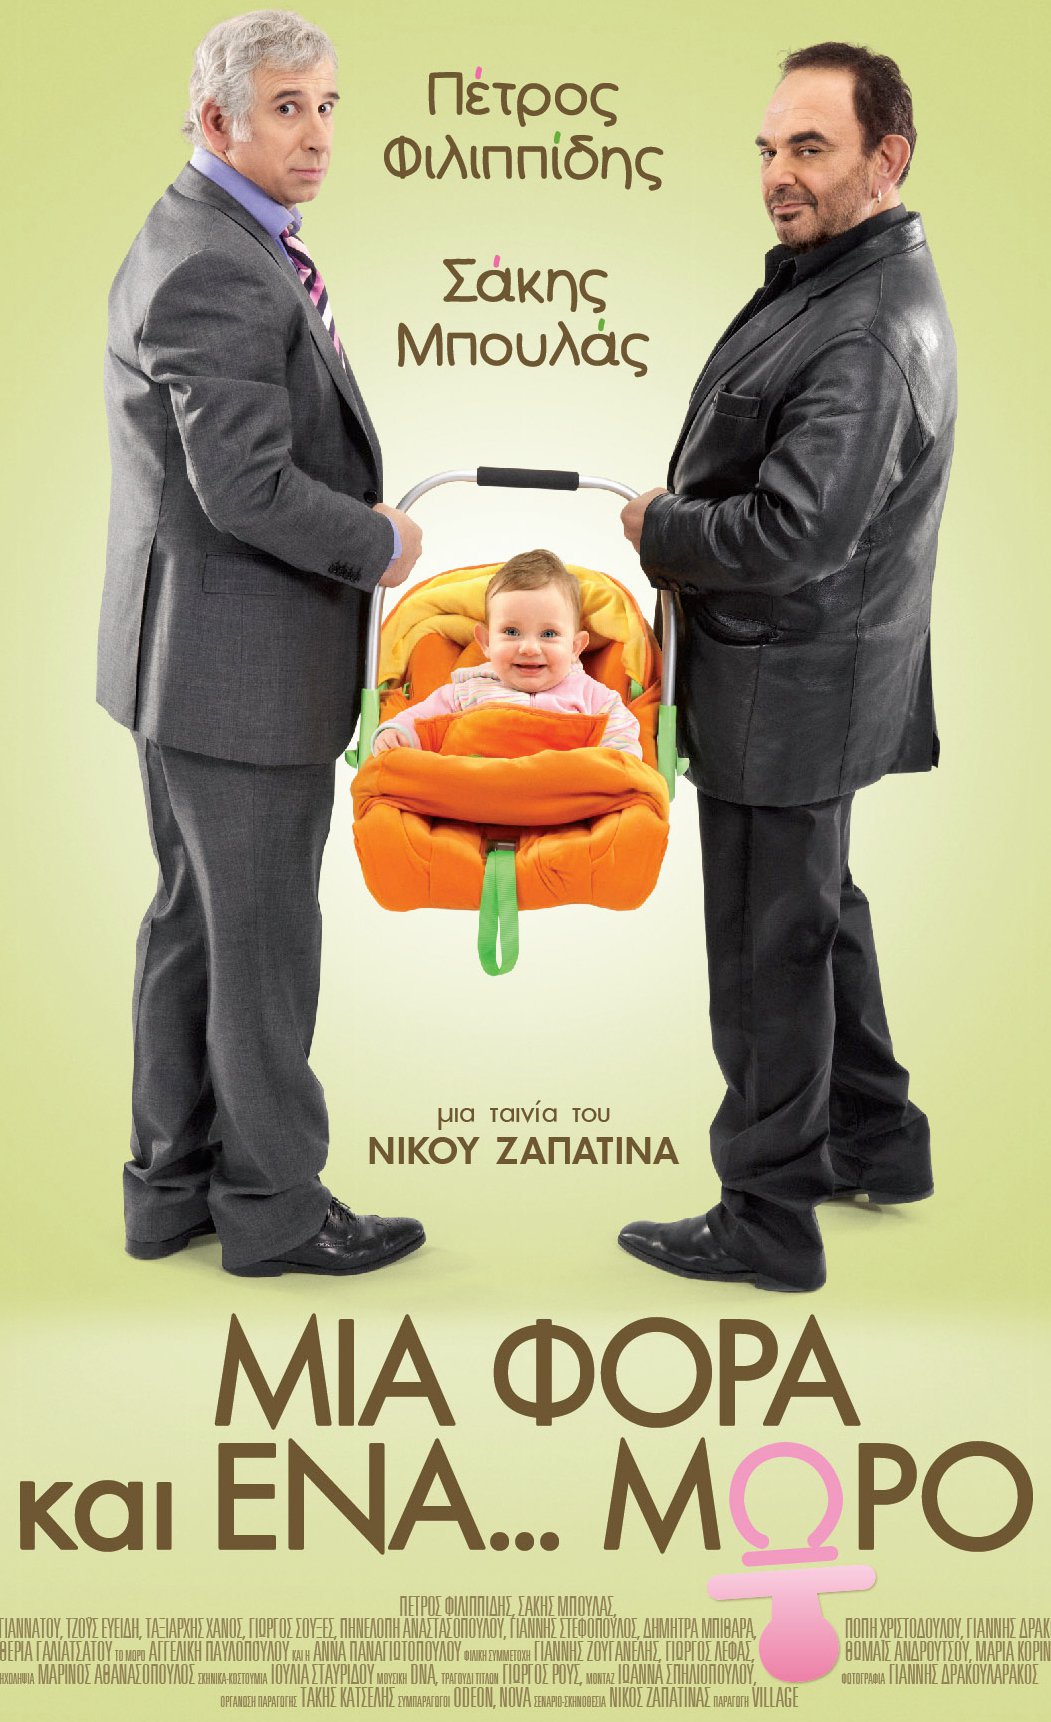 Μια φορά και ένα μωρό - Μια Φορά και ένα... Μωρό (2011)